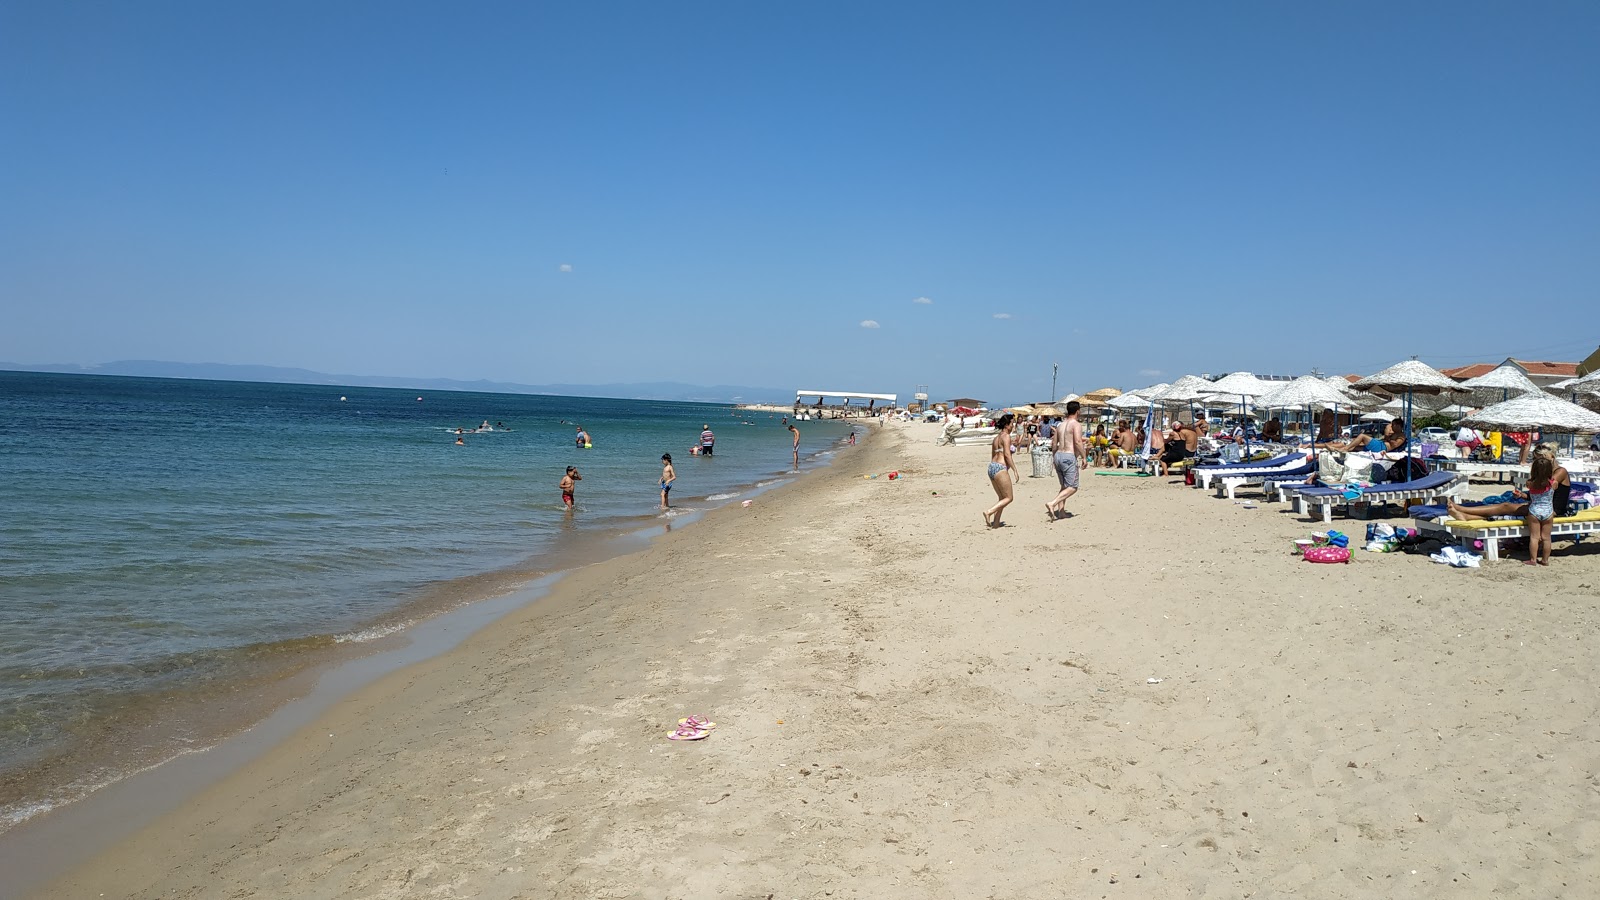 Enez beach'in fotoğrafı geniş plaj ile birlikte